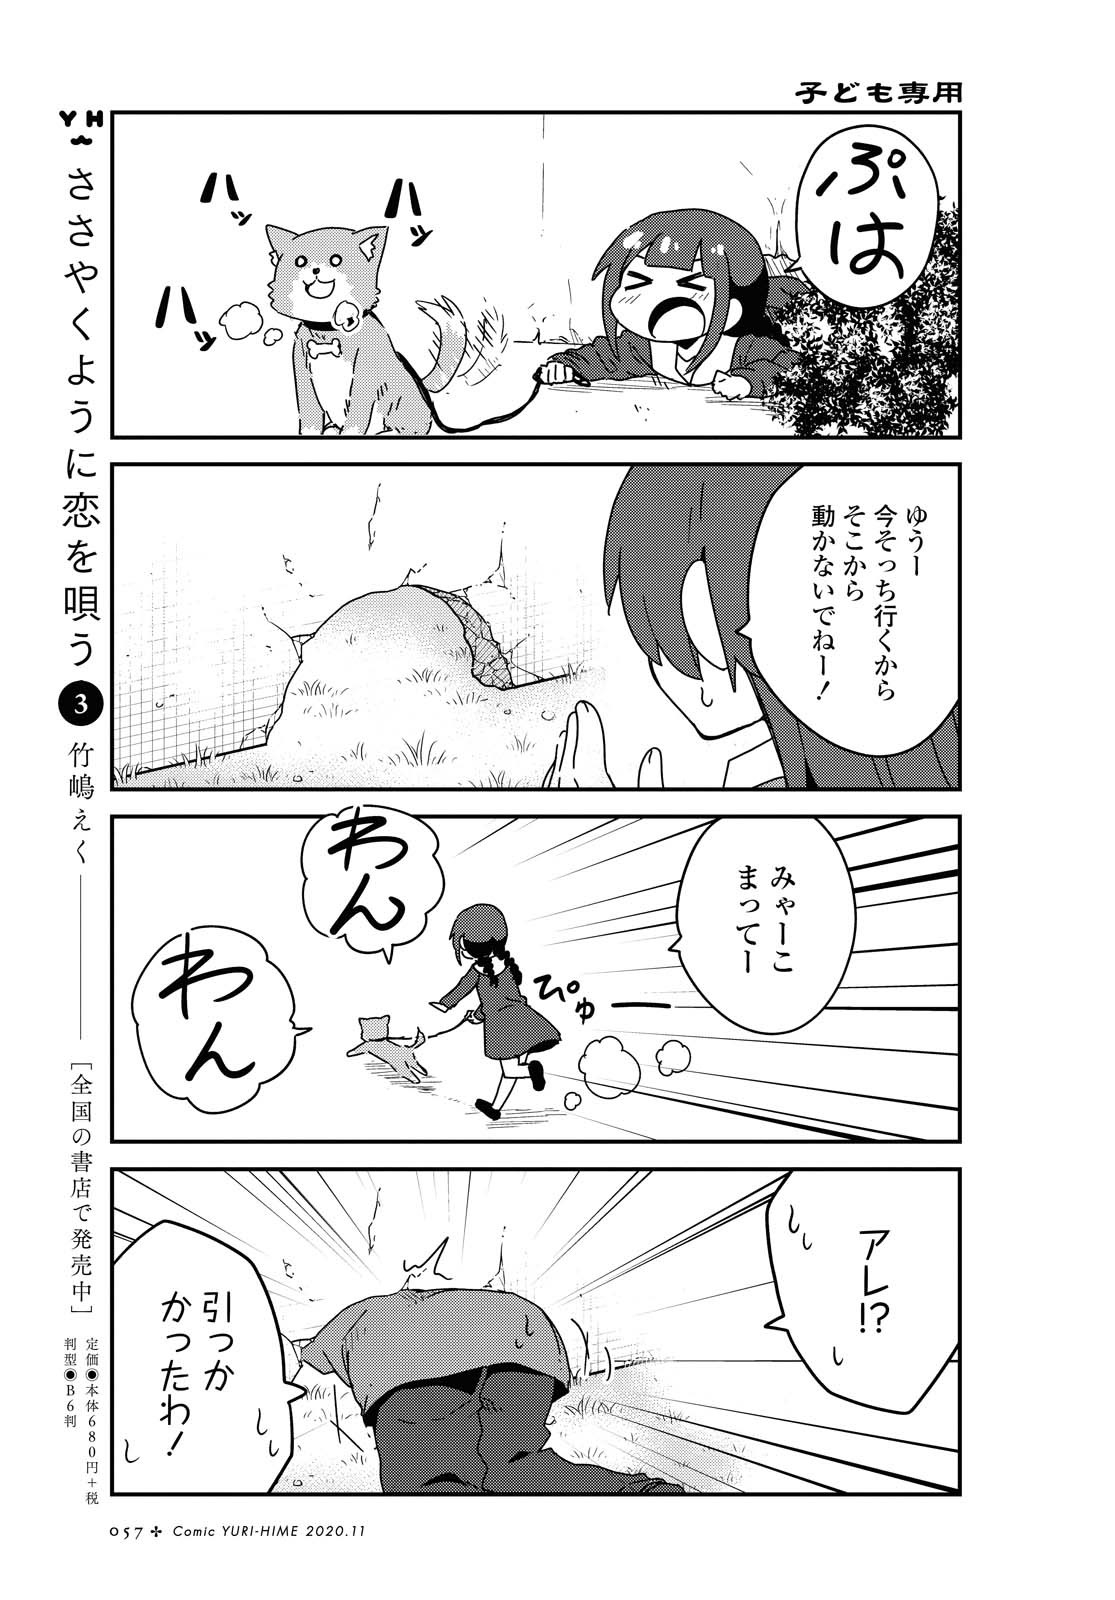 Watashi ni Tenshi ga Maiorita! - Chapter 71 - Page 3